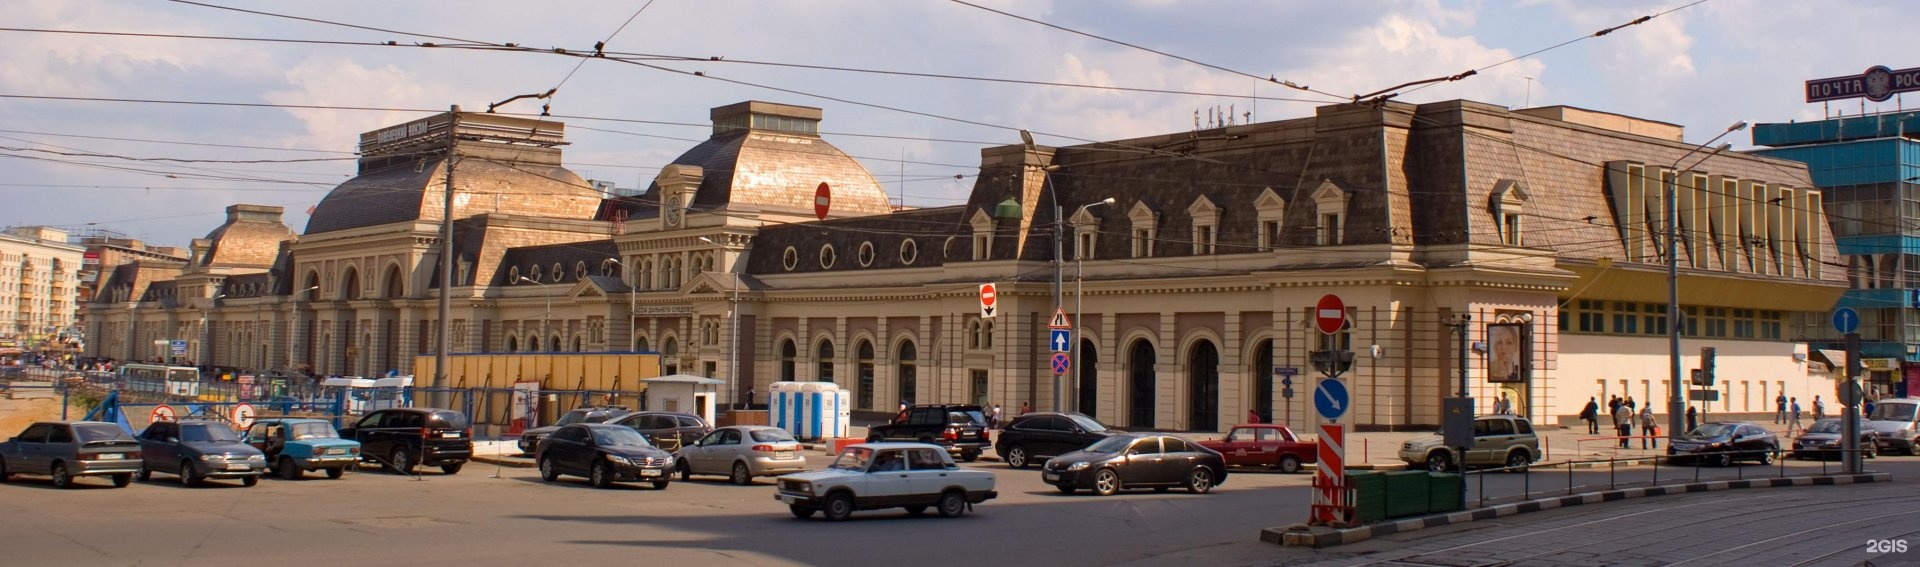 павелецкий вокзал москва внутри